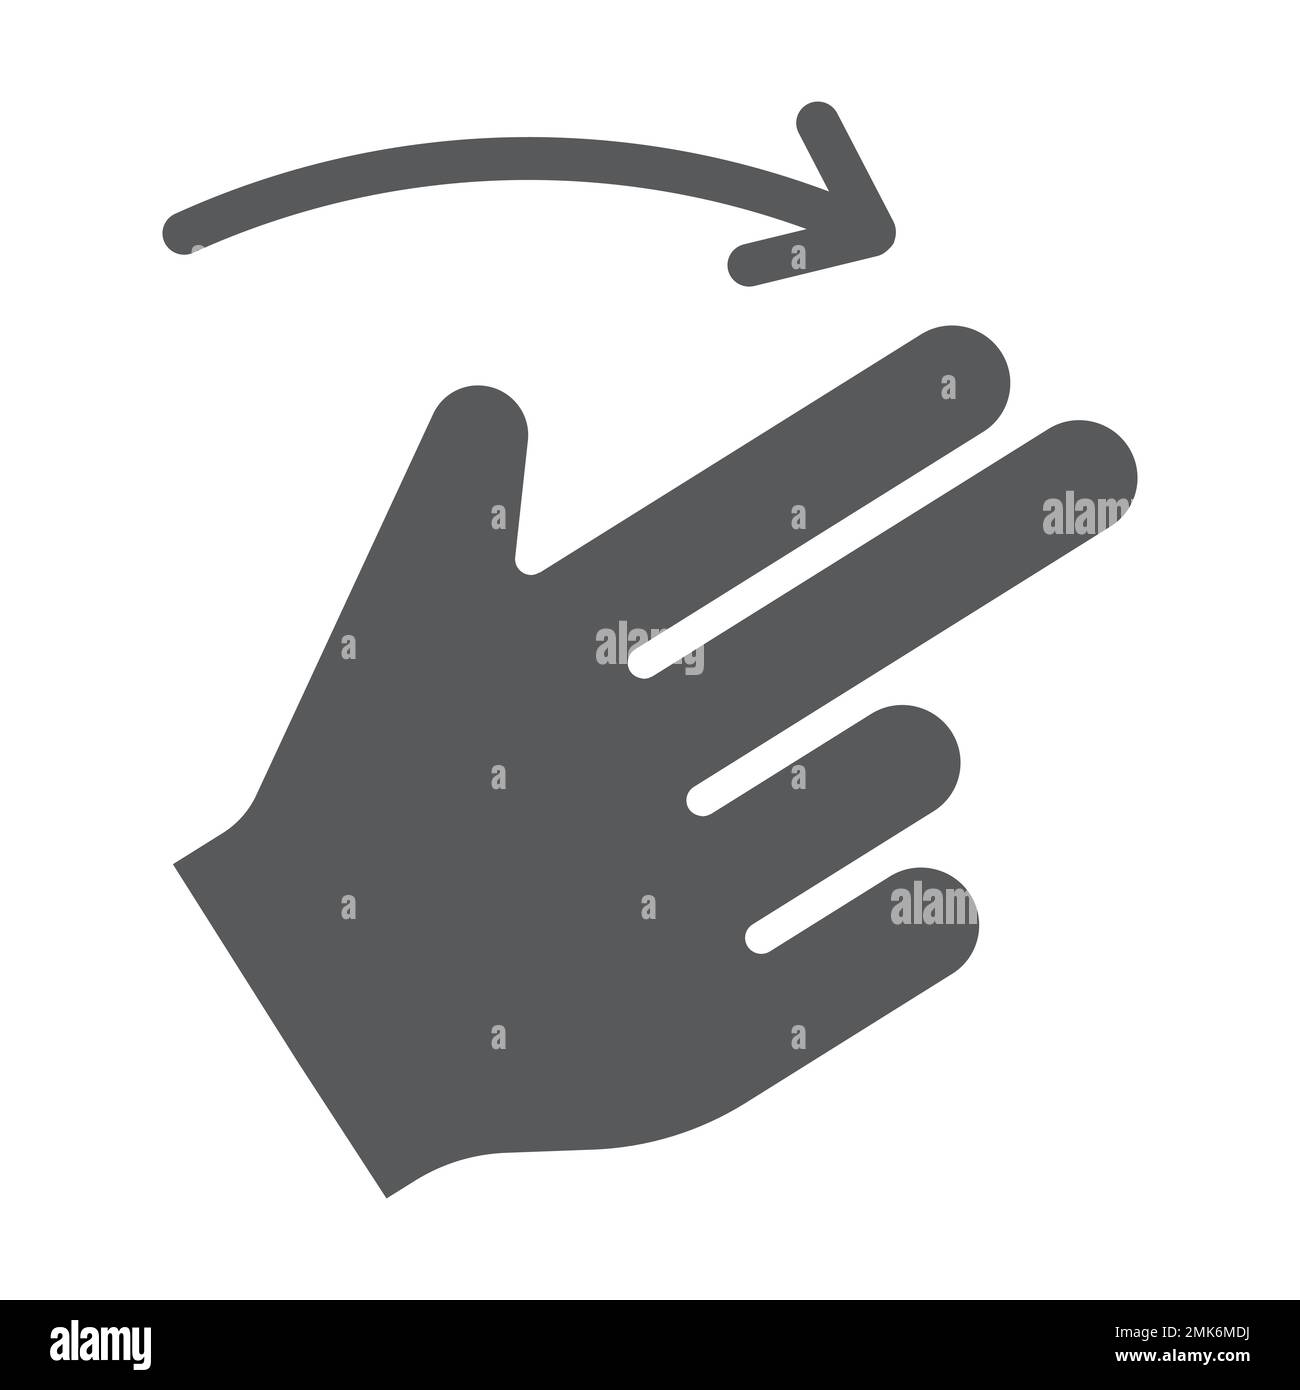 Zwei-Finger-Fingerbewegung nach rechts, Gesten und Hand, Wischzeichen, Vektorgrafiken, ein ausgefülltes Muster auf weißem Hintergrund, 10. Stock Vektor